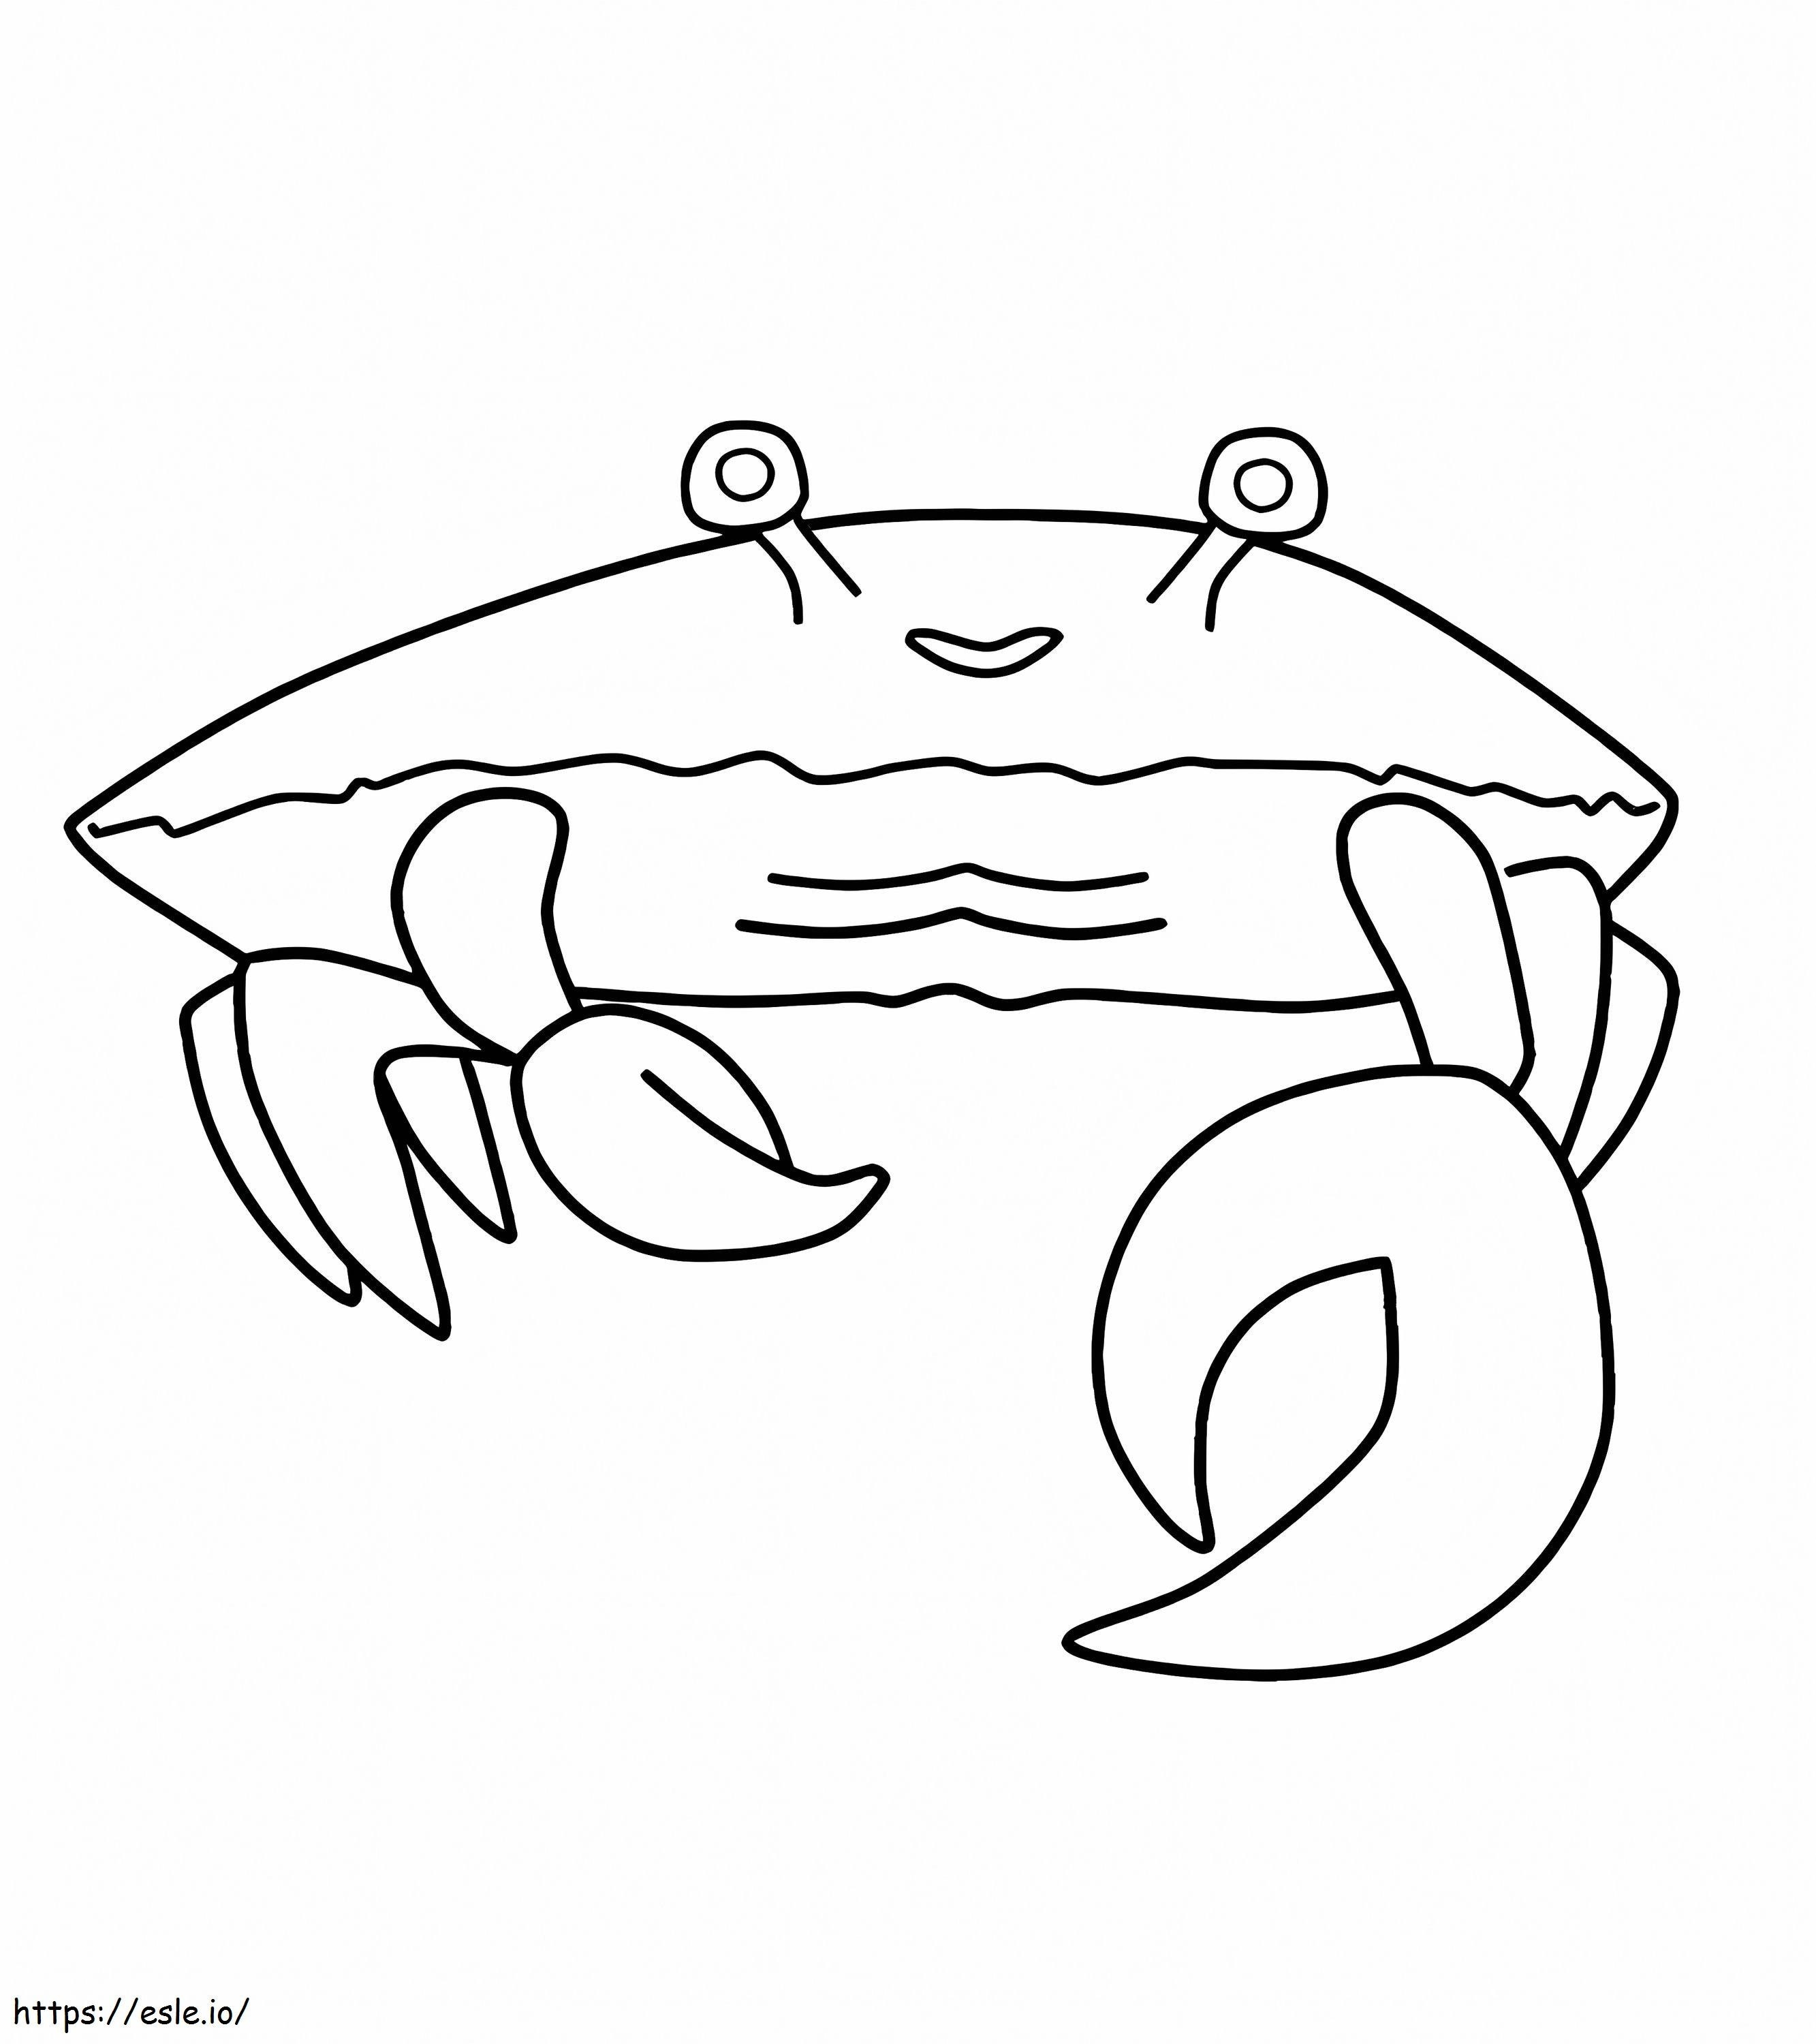 Coloriage Crabe simple à imprimer dessin